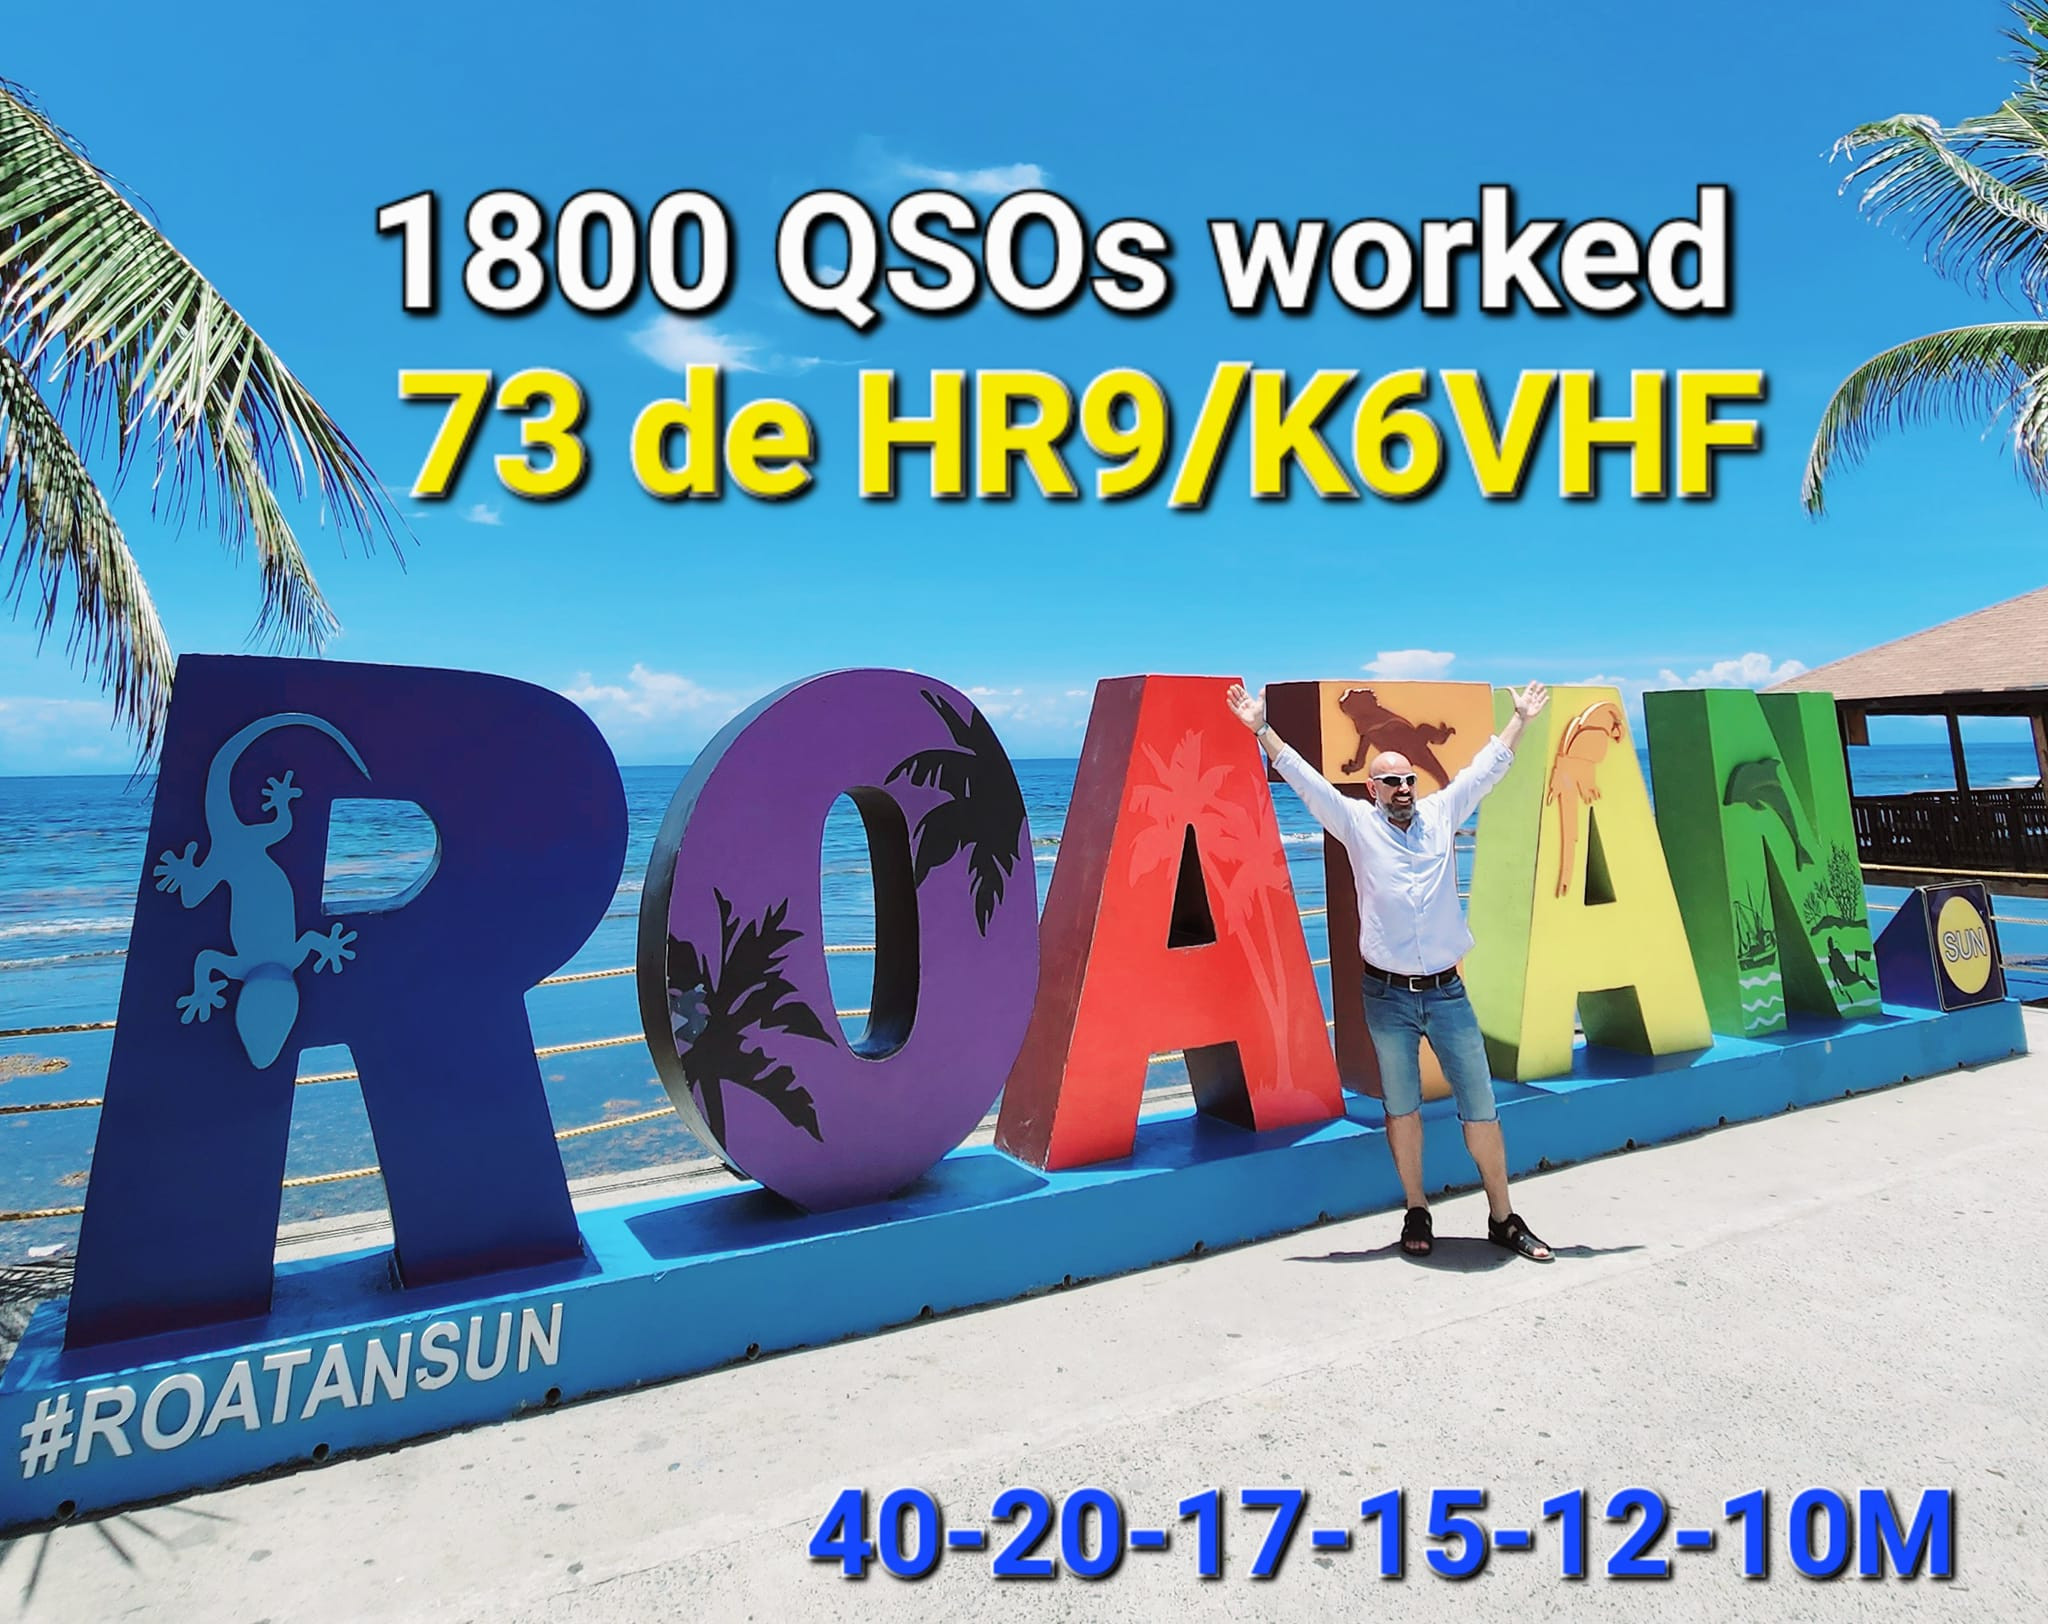 HR9/K6VHF Roatan Island 1800 QSO